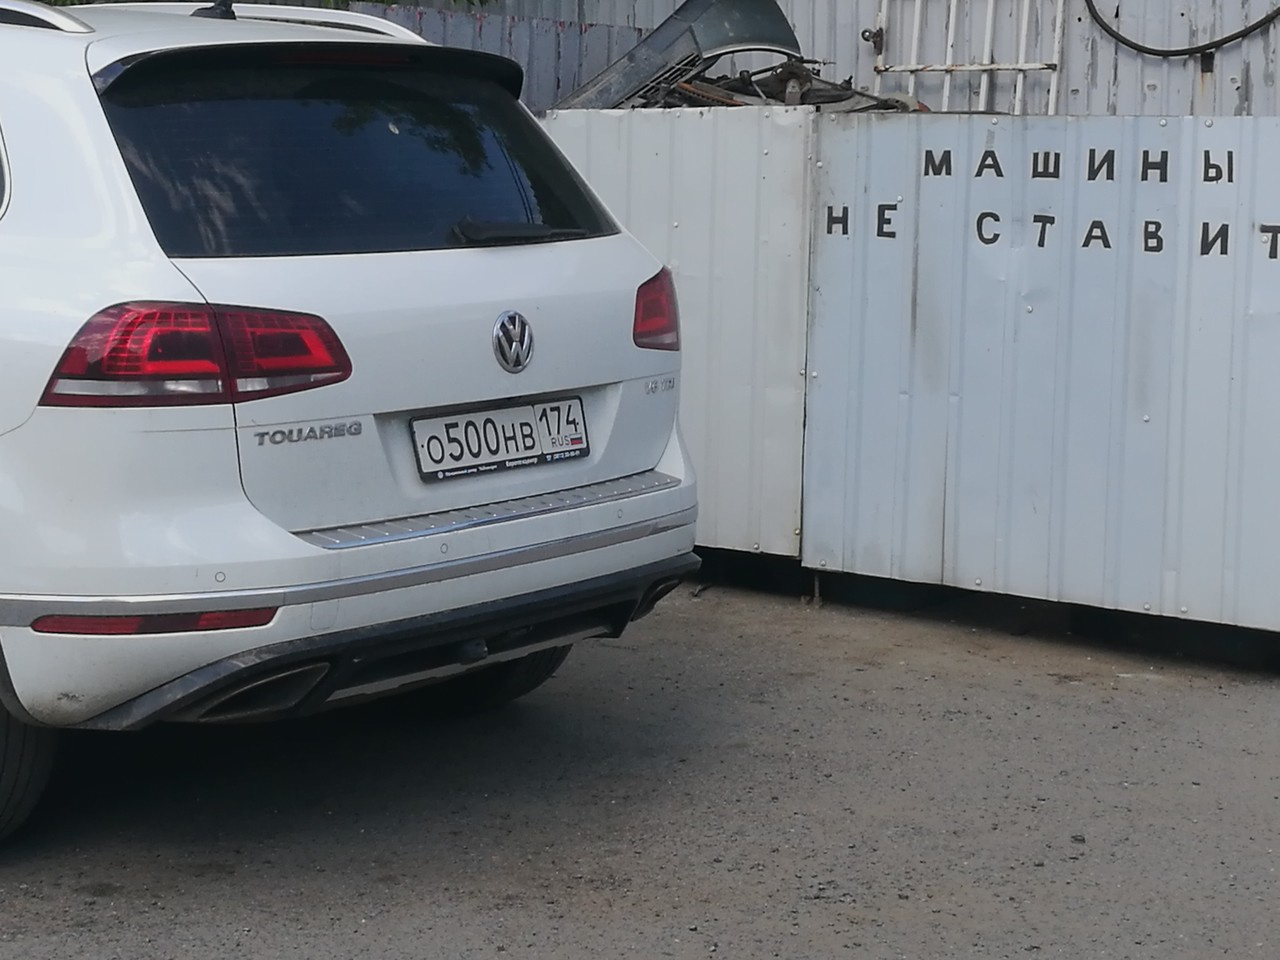 Наконец мы добрались до совсем уж клинических случаев: Volkswagen Touareg с красивым номером стоит у ворот с надписью «Машины не ставить»